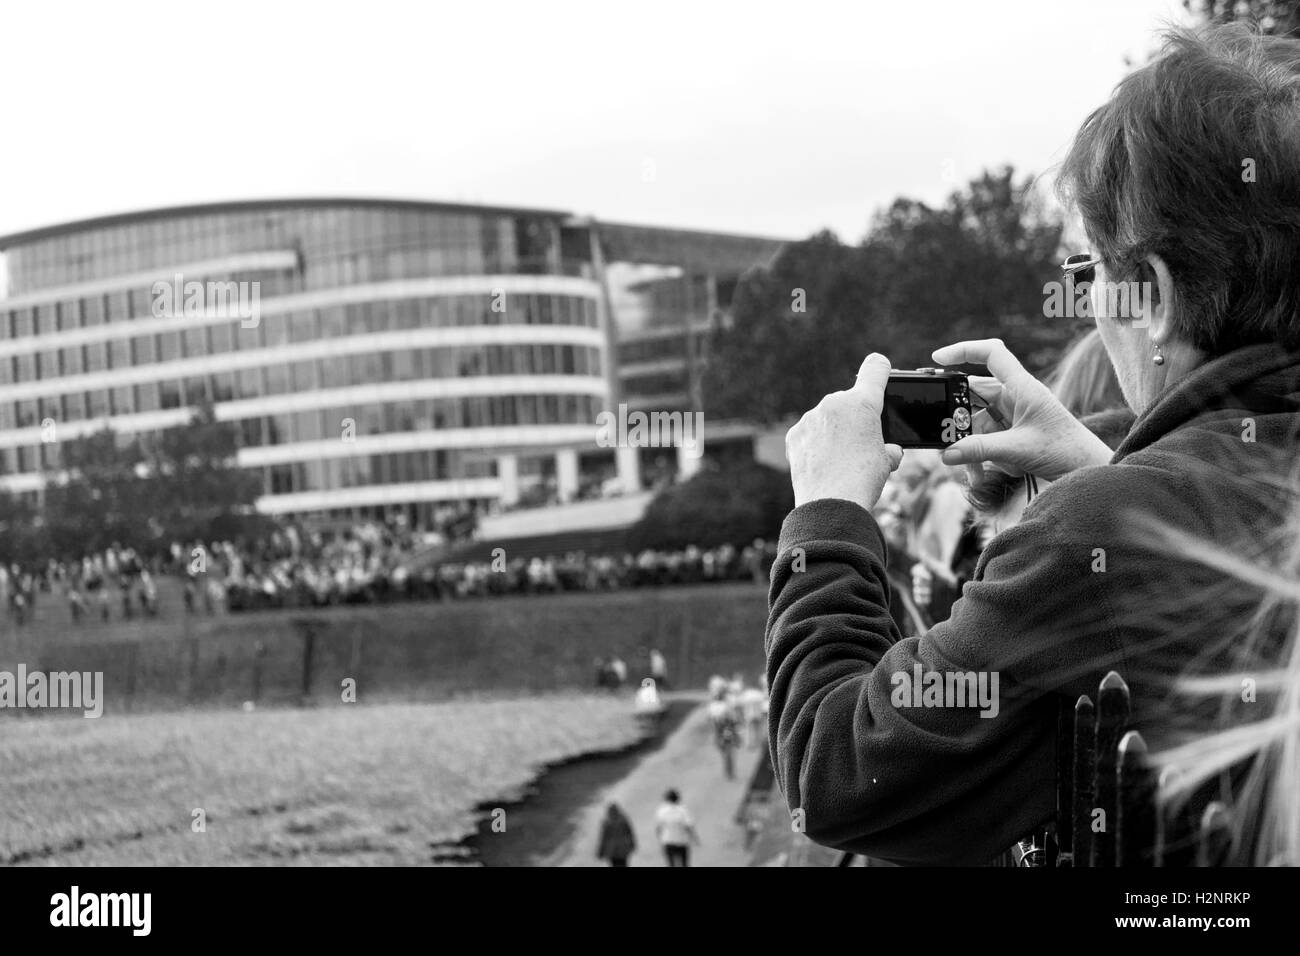 Un turista prendere una fotografia del Ponte di Londra nel 2014 quando le coltivazioni di oppio sono state stabilite per ricordo. Foto Stock